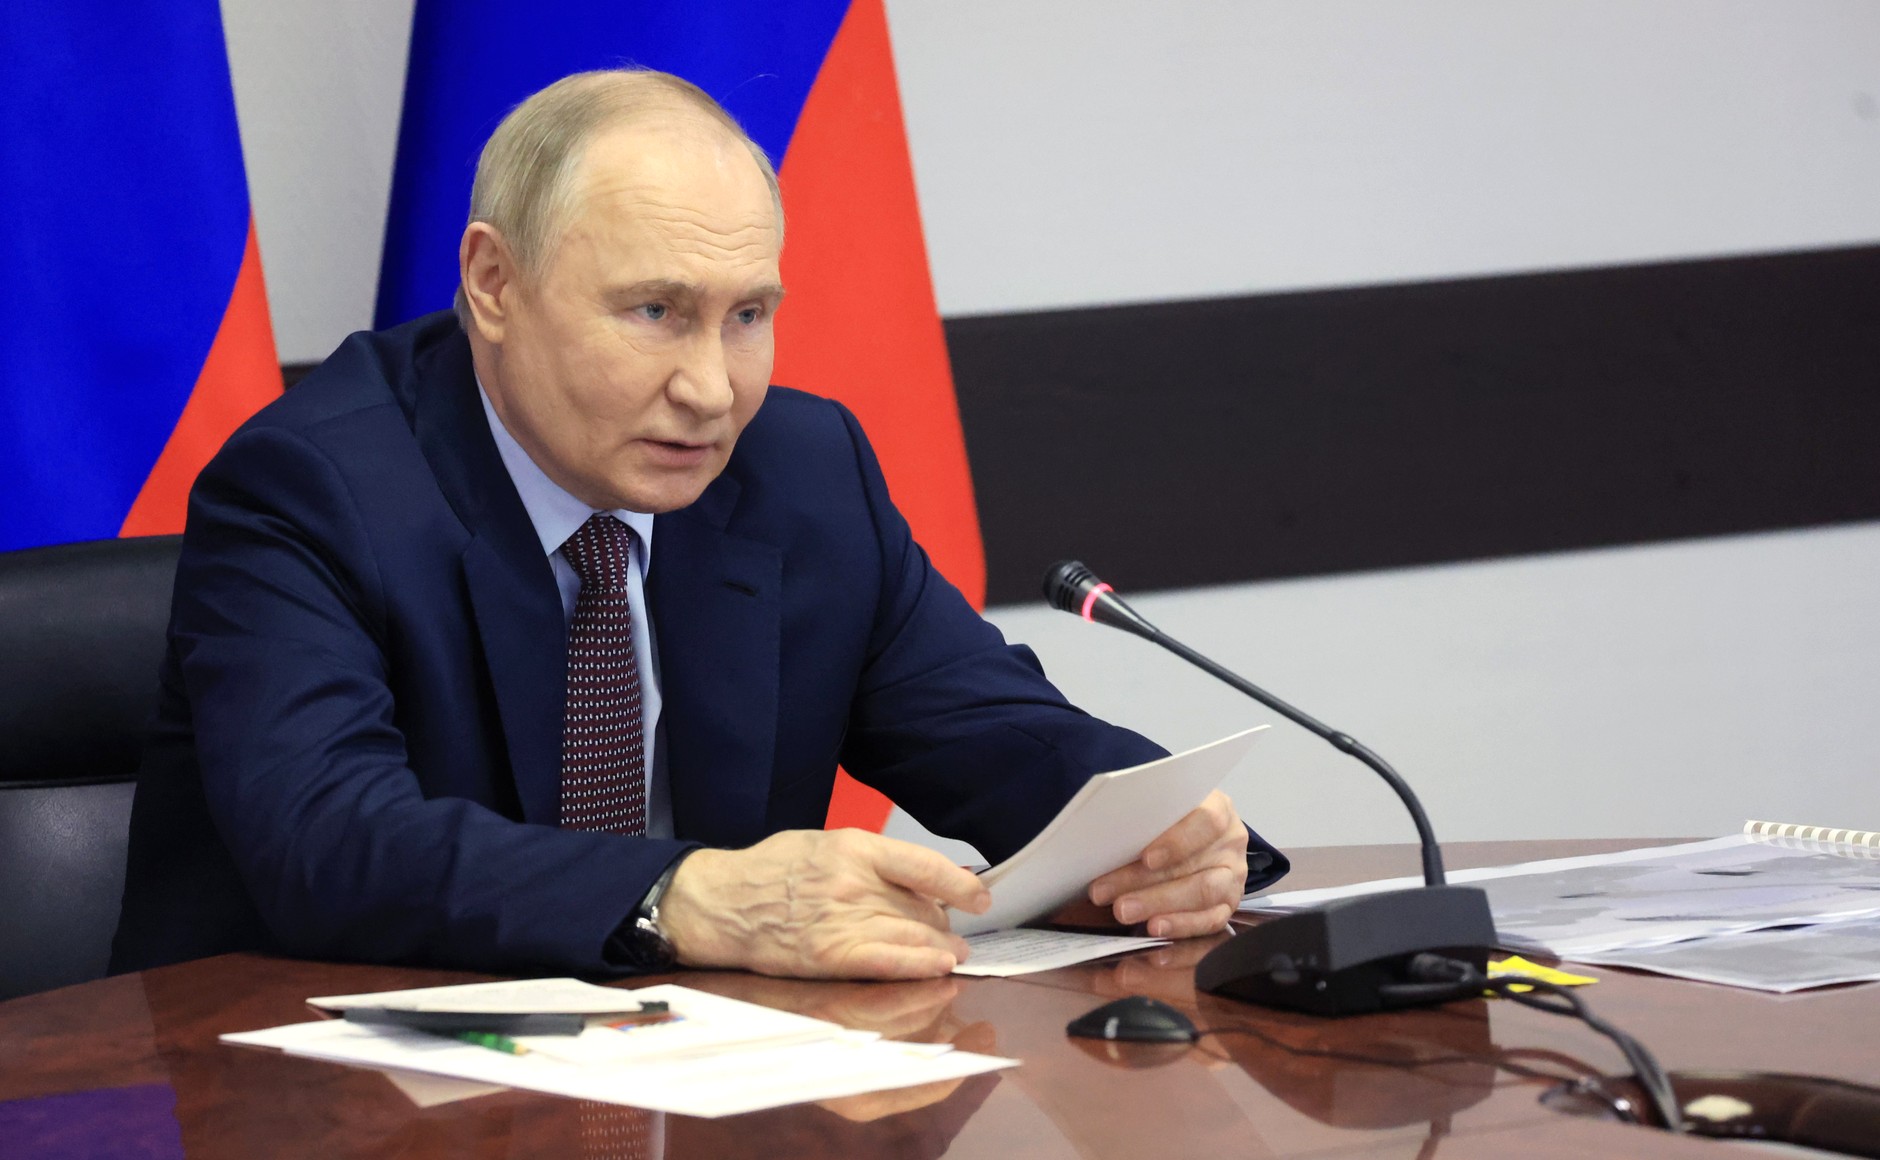 Экономист Валентин Катасонов: "Путин готовит Россию к катастрофе планетарного масштаба"